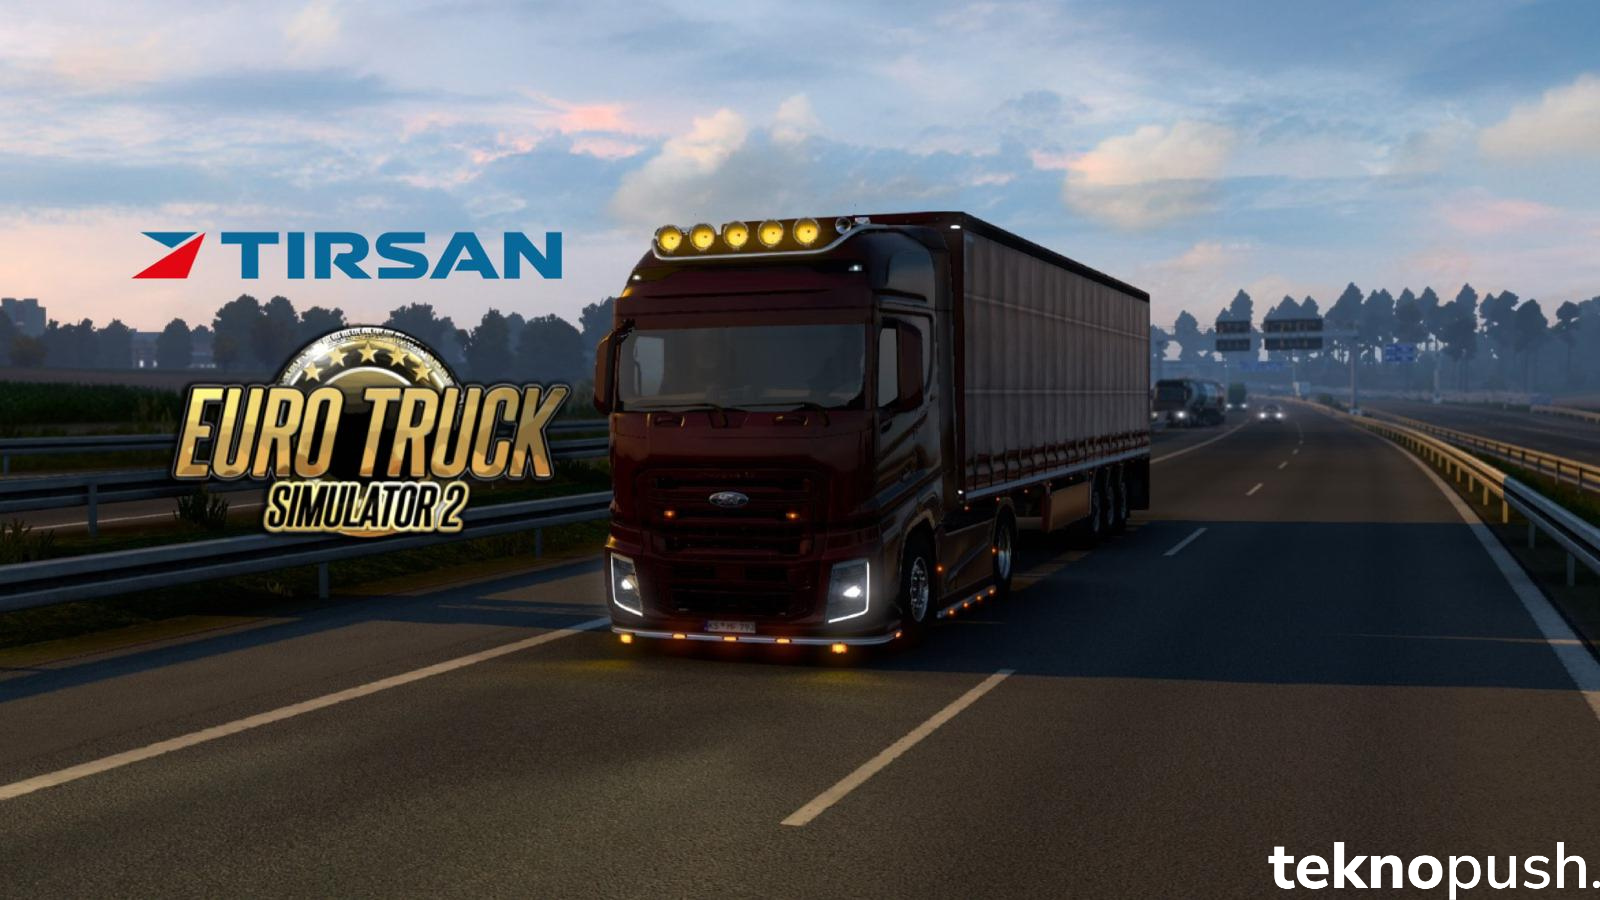 Cumhuriyetimizin 100. Yılına Özel Jest: Euro Truck Simulator 2’ye Türk Markası Geliyor!